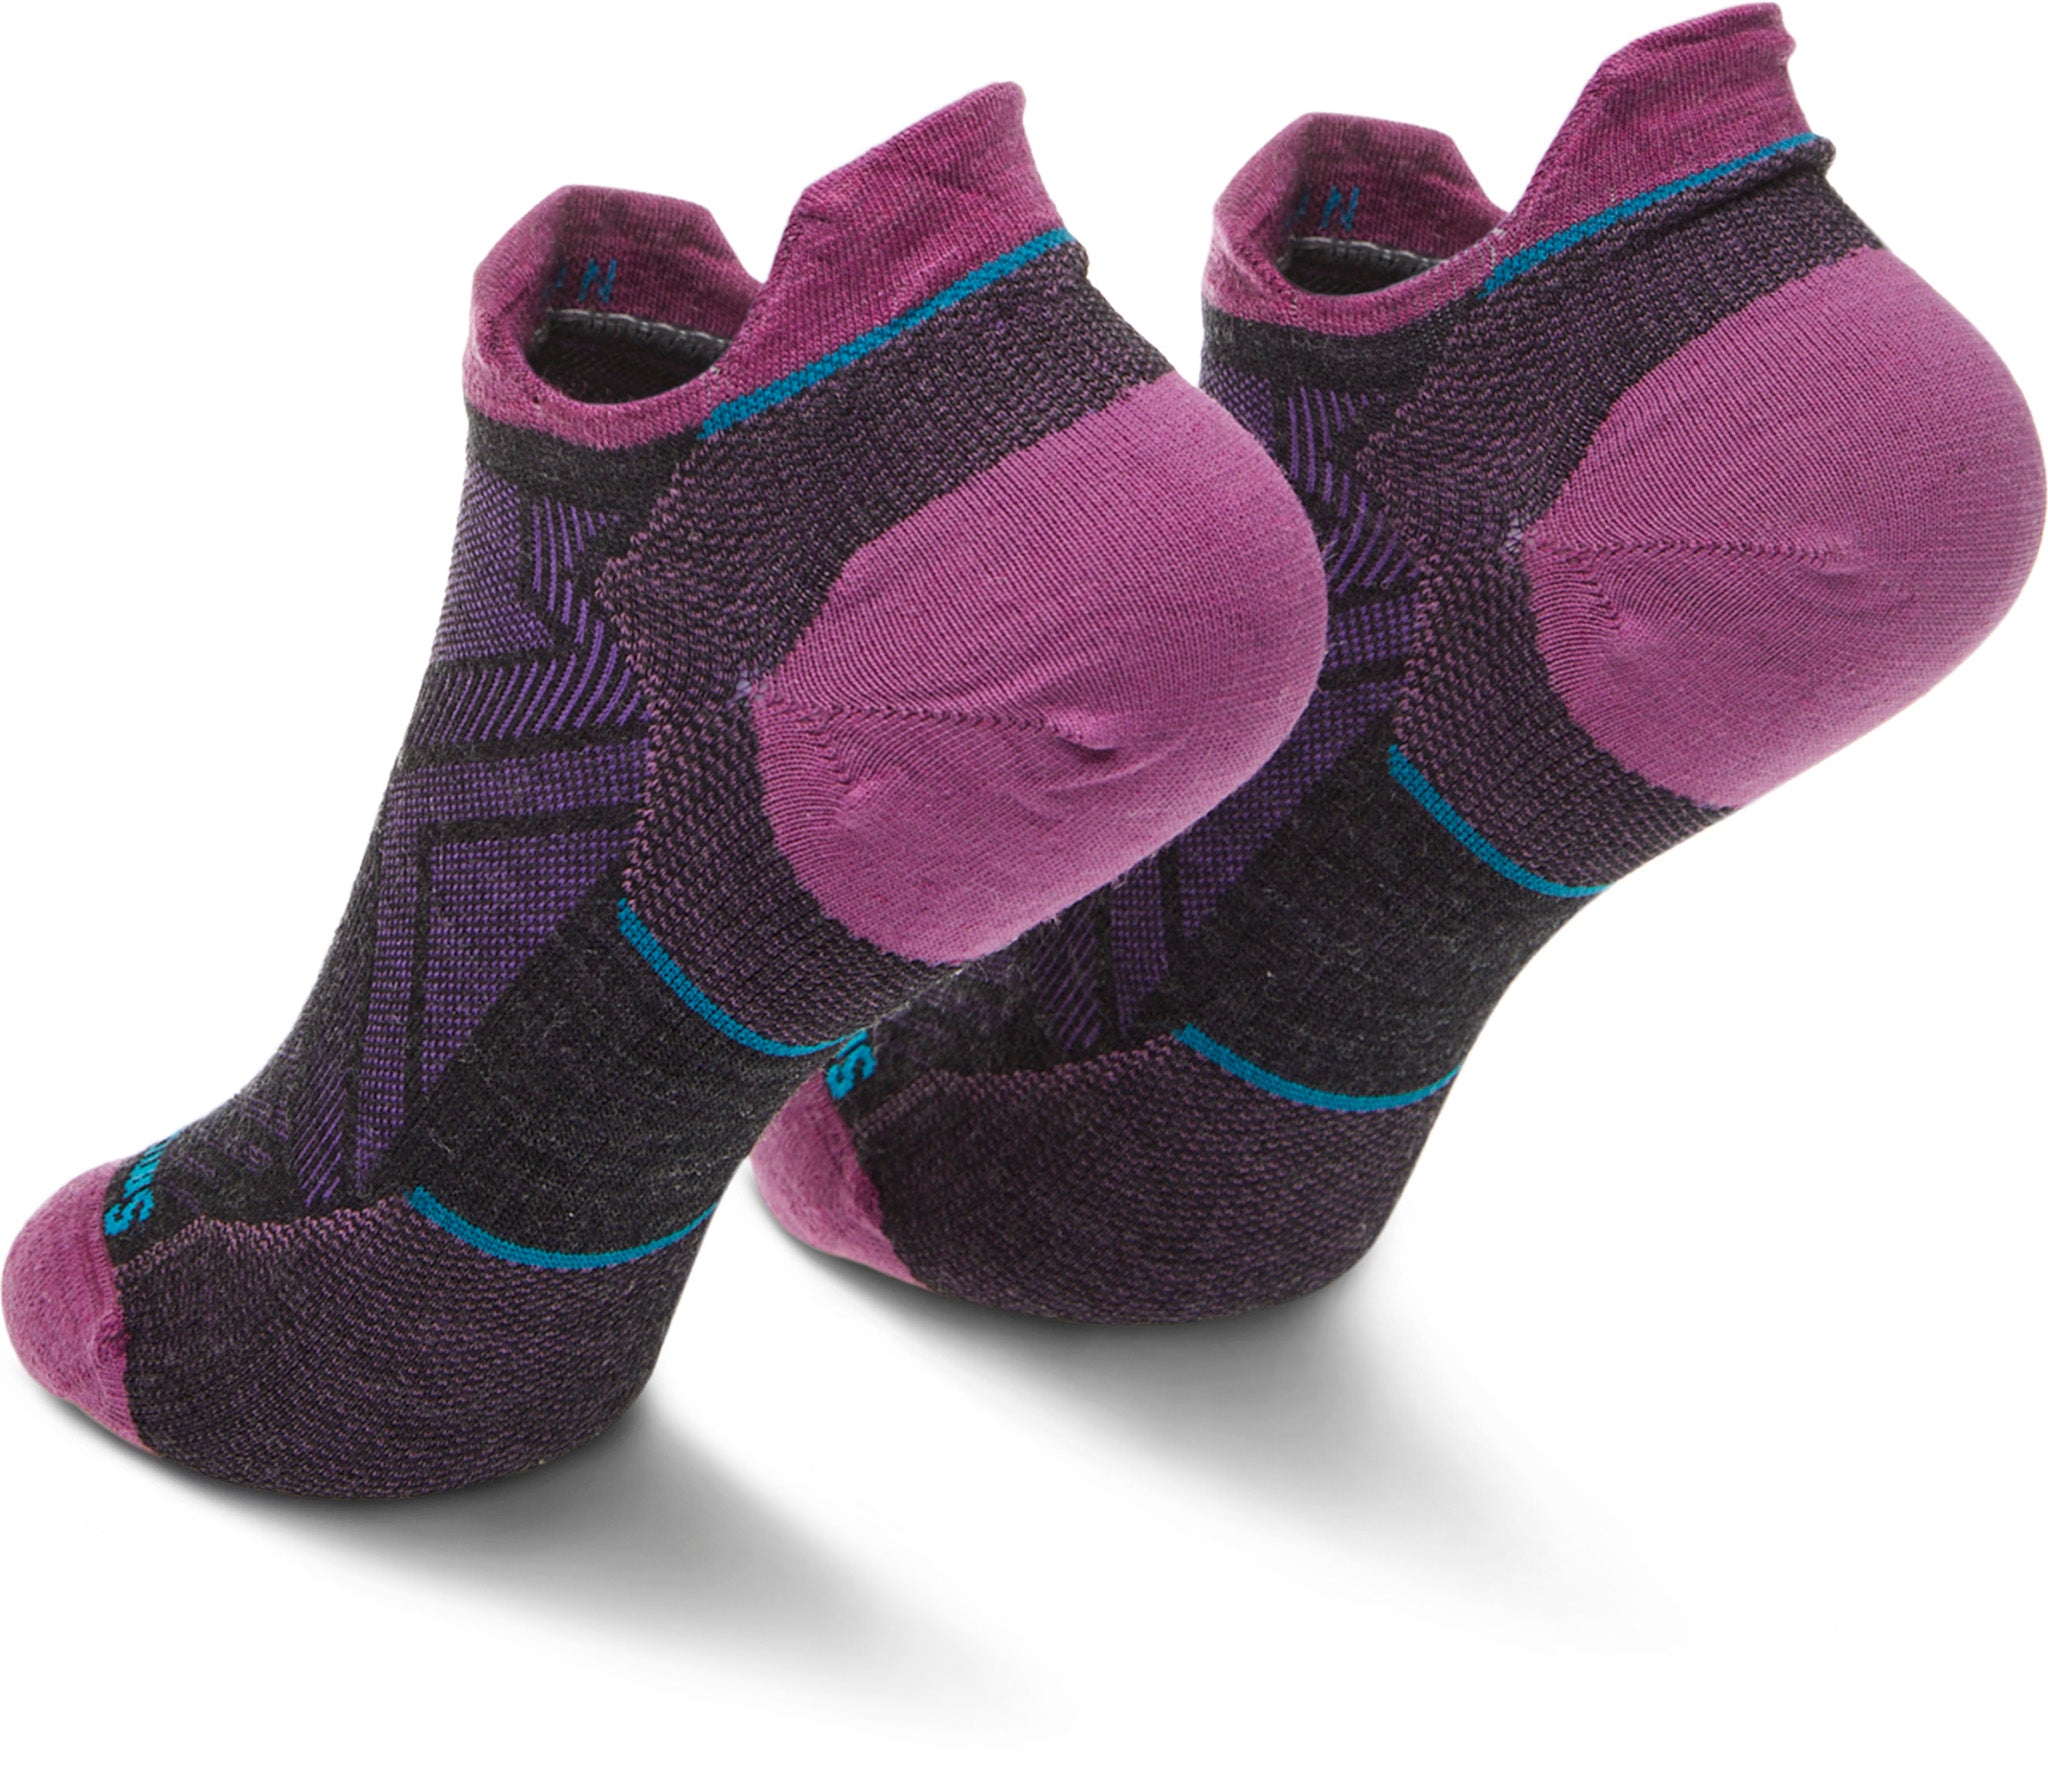 Smartwool Run Zero Cushion Low Ankle Socks - Women's